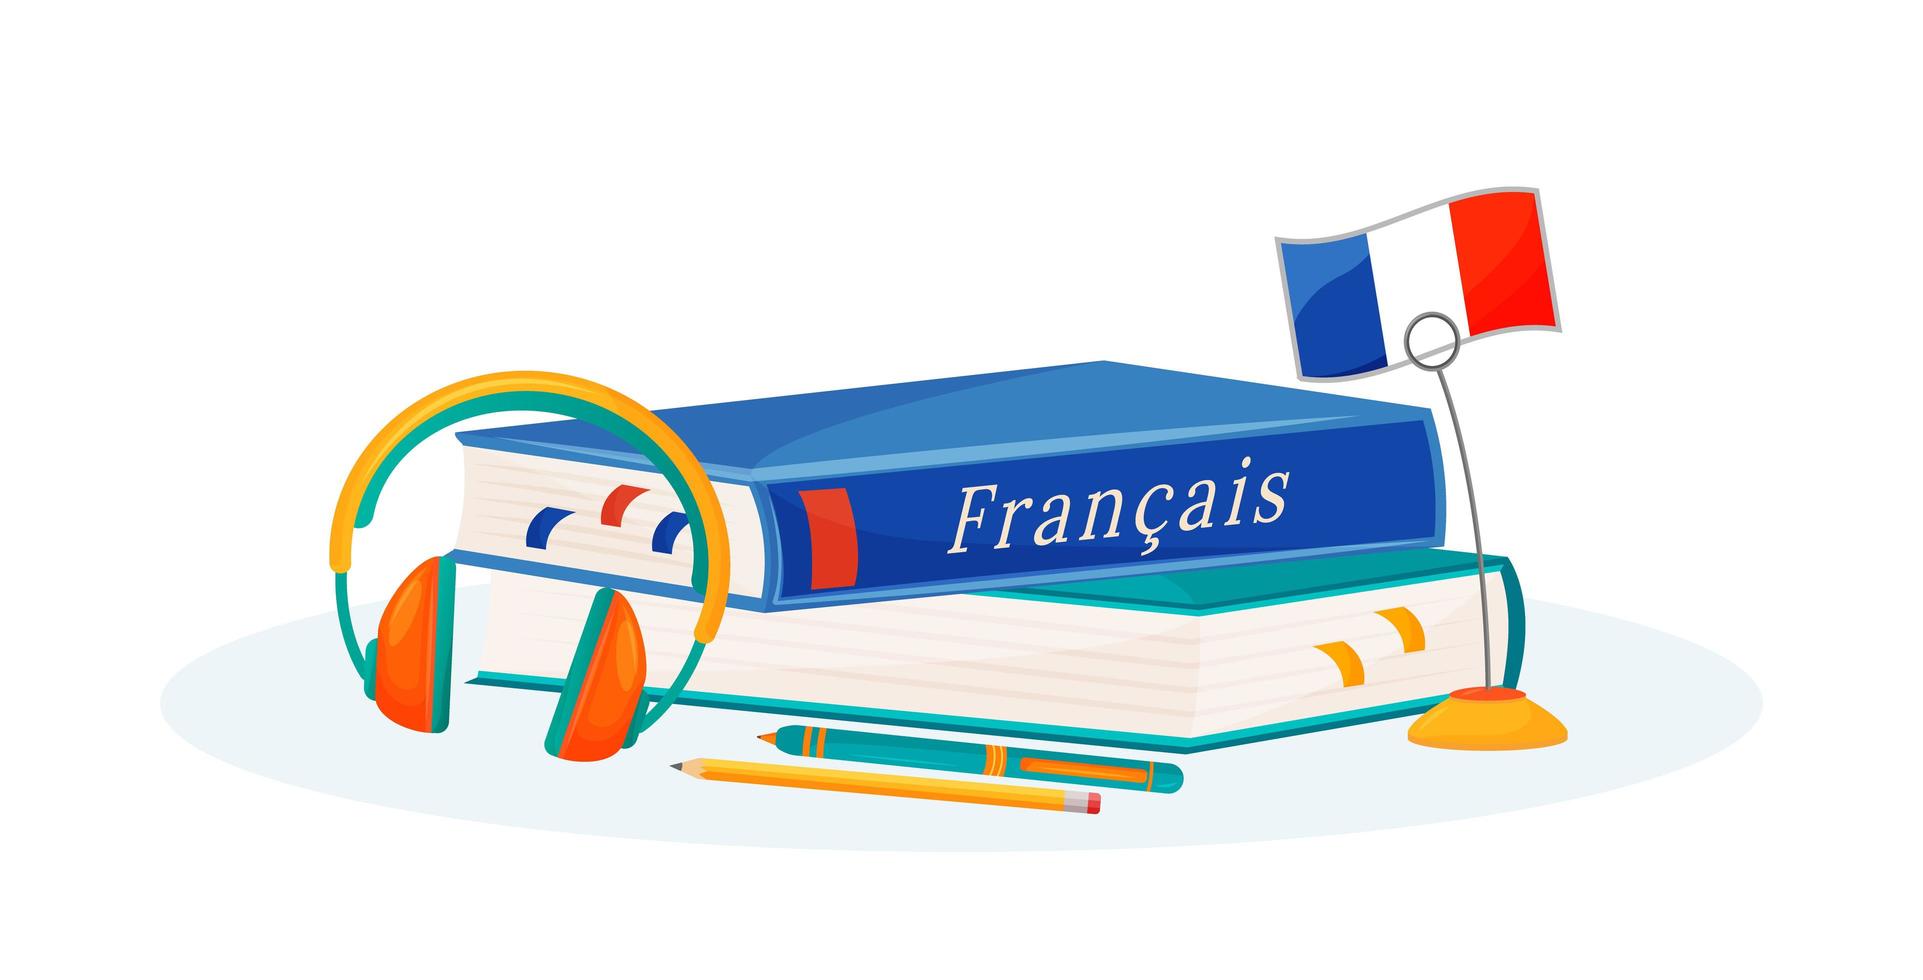 livros de aprendizagem franceses vetor